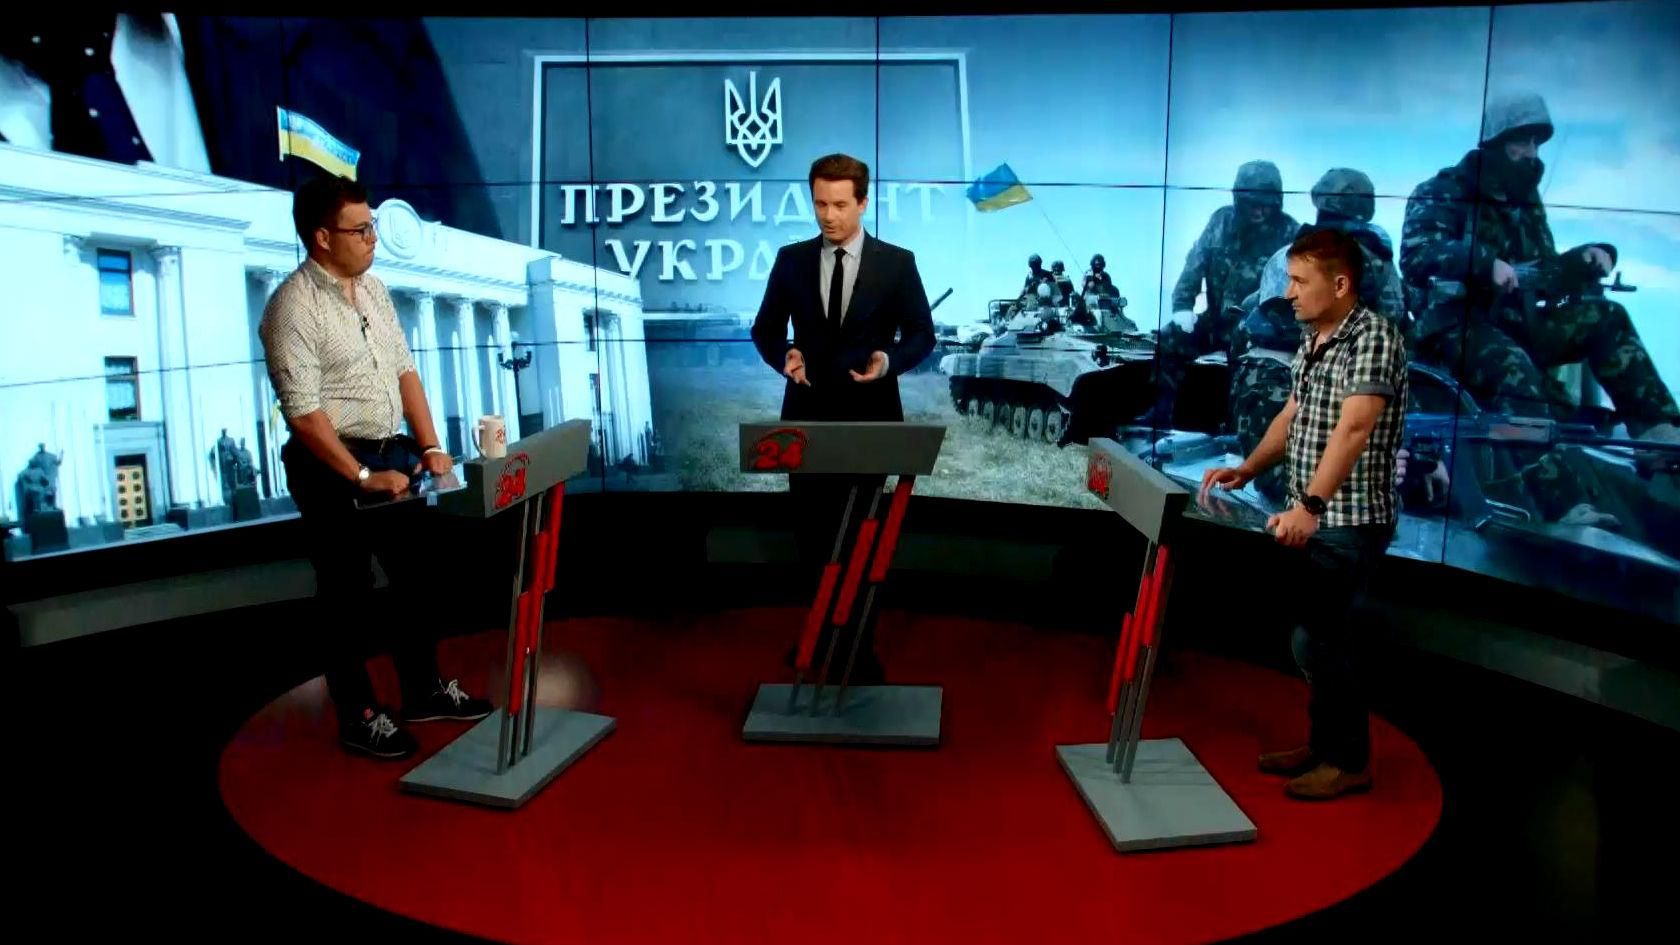 Яценюк не собирается баллотироваться на должность президента, —политолог